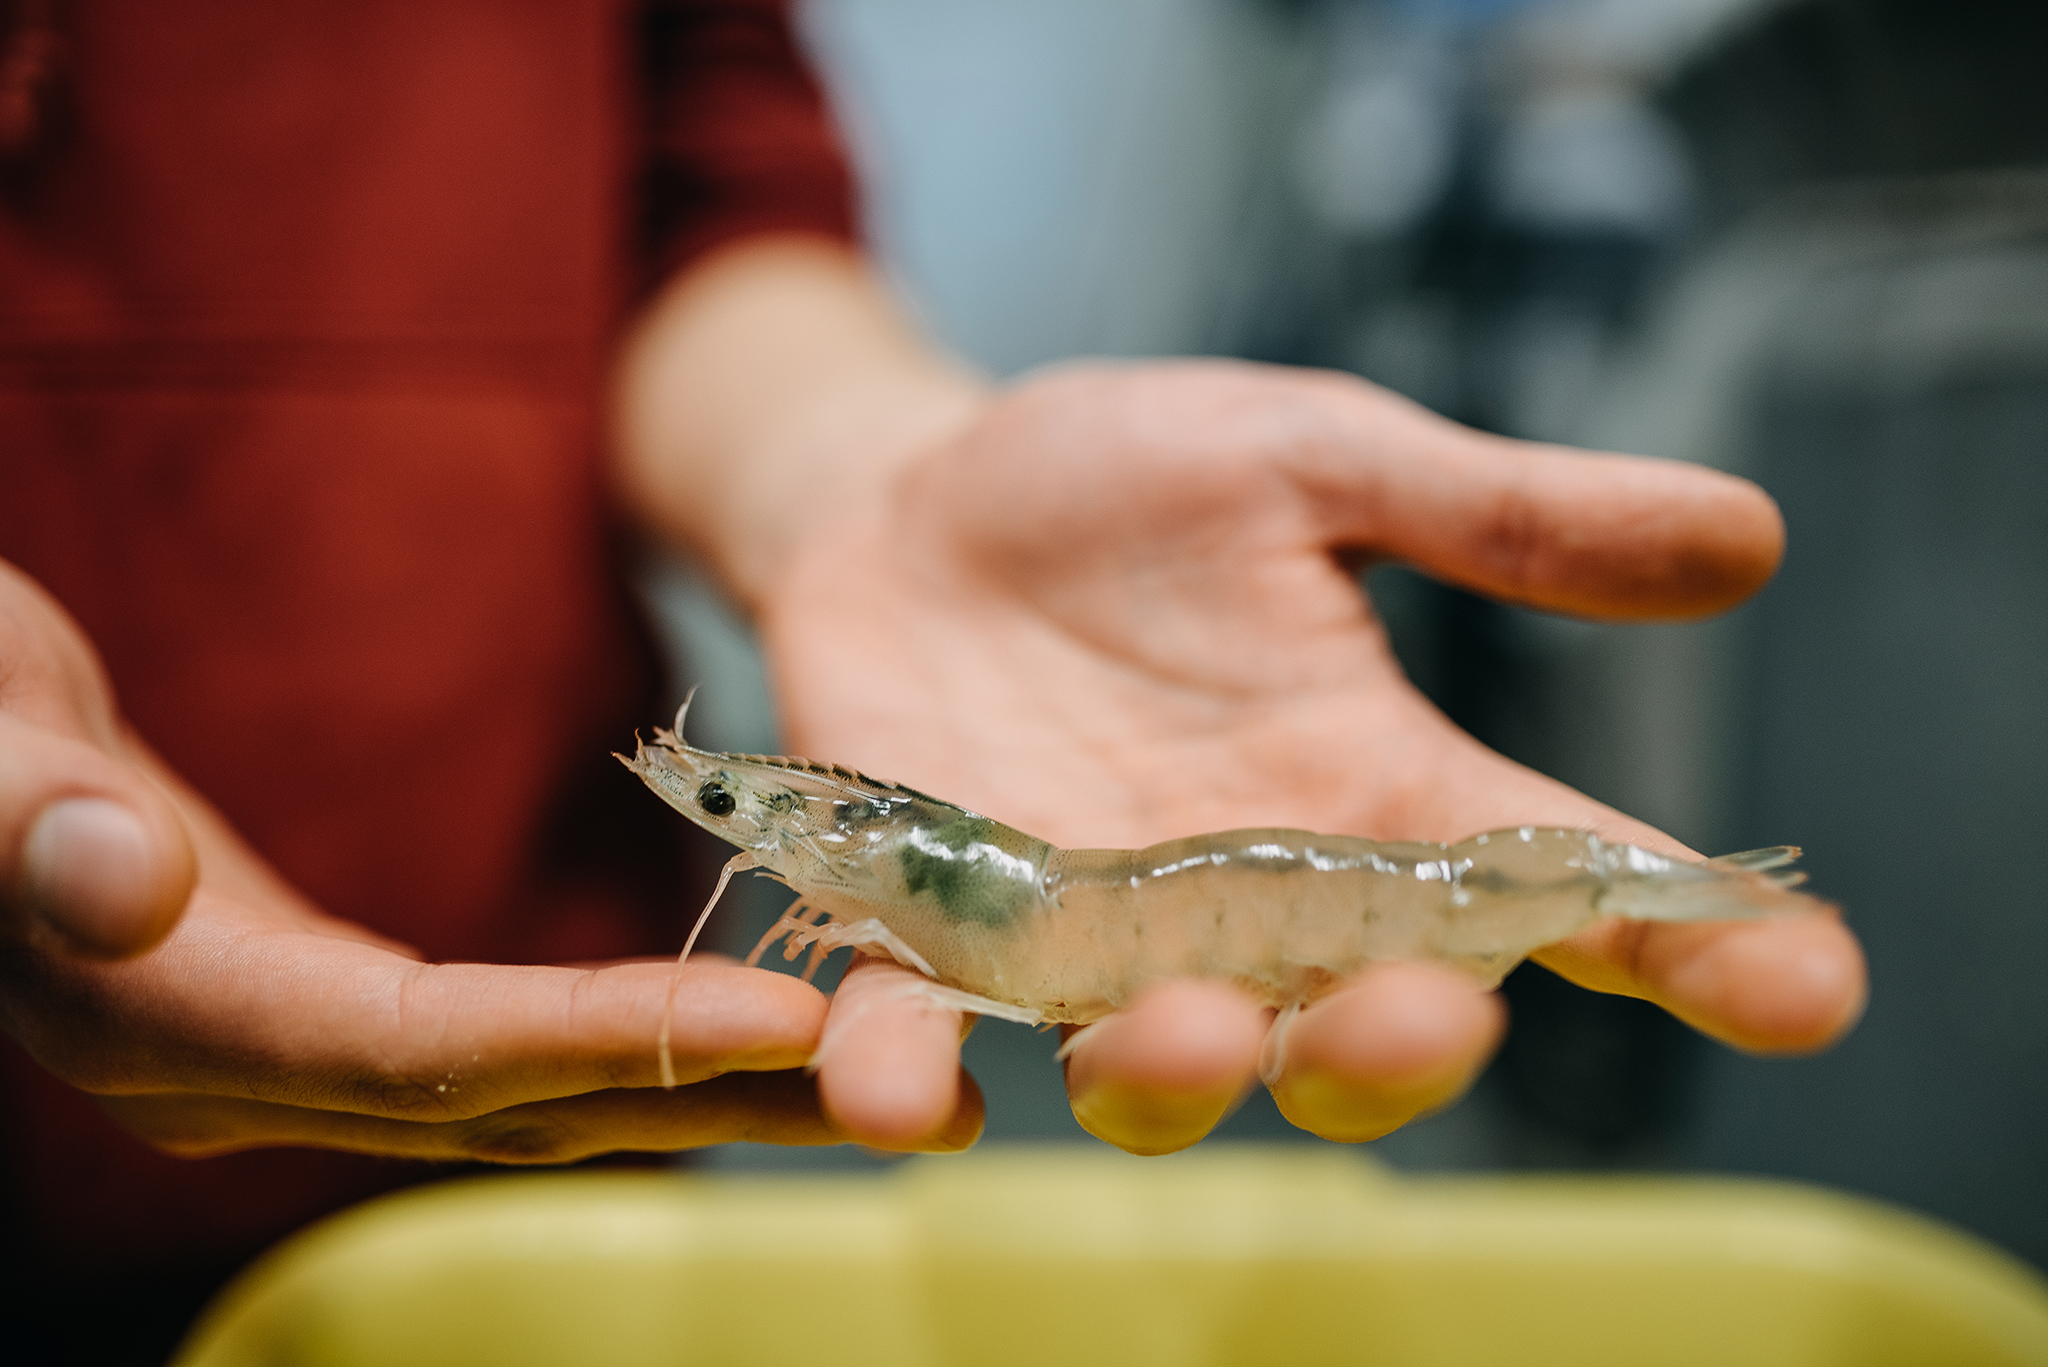 KU mokslininkai augina krevetes naudodami geoterminį vandenį